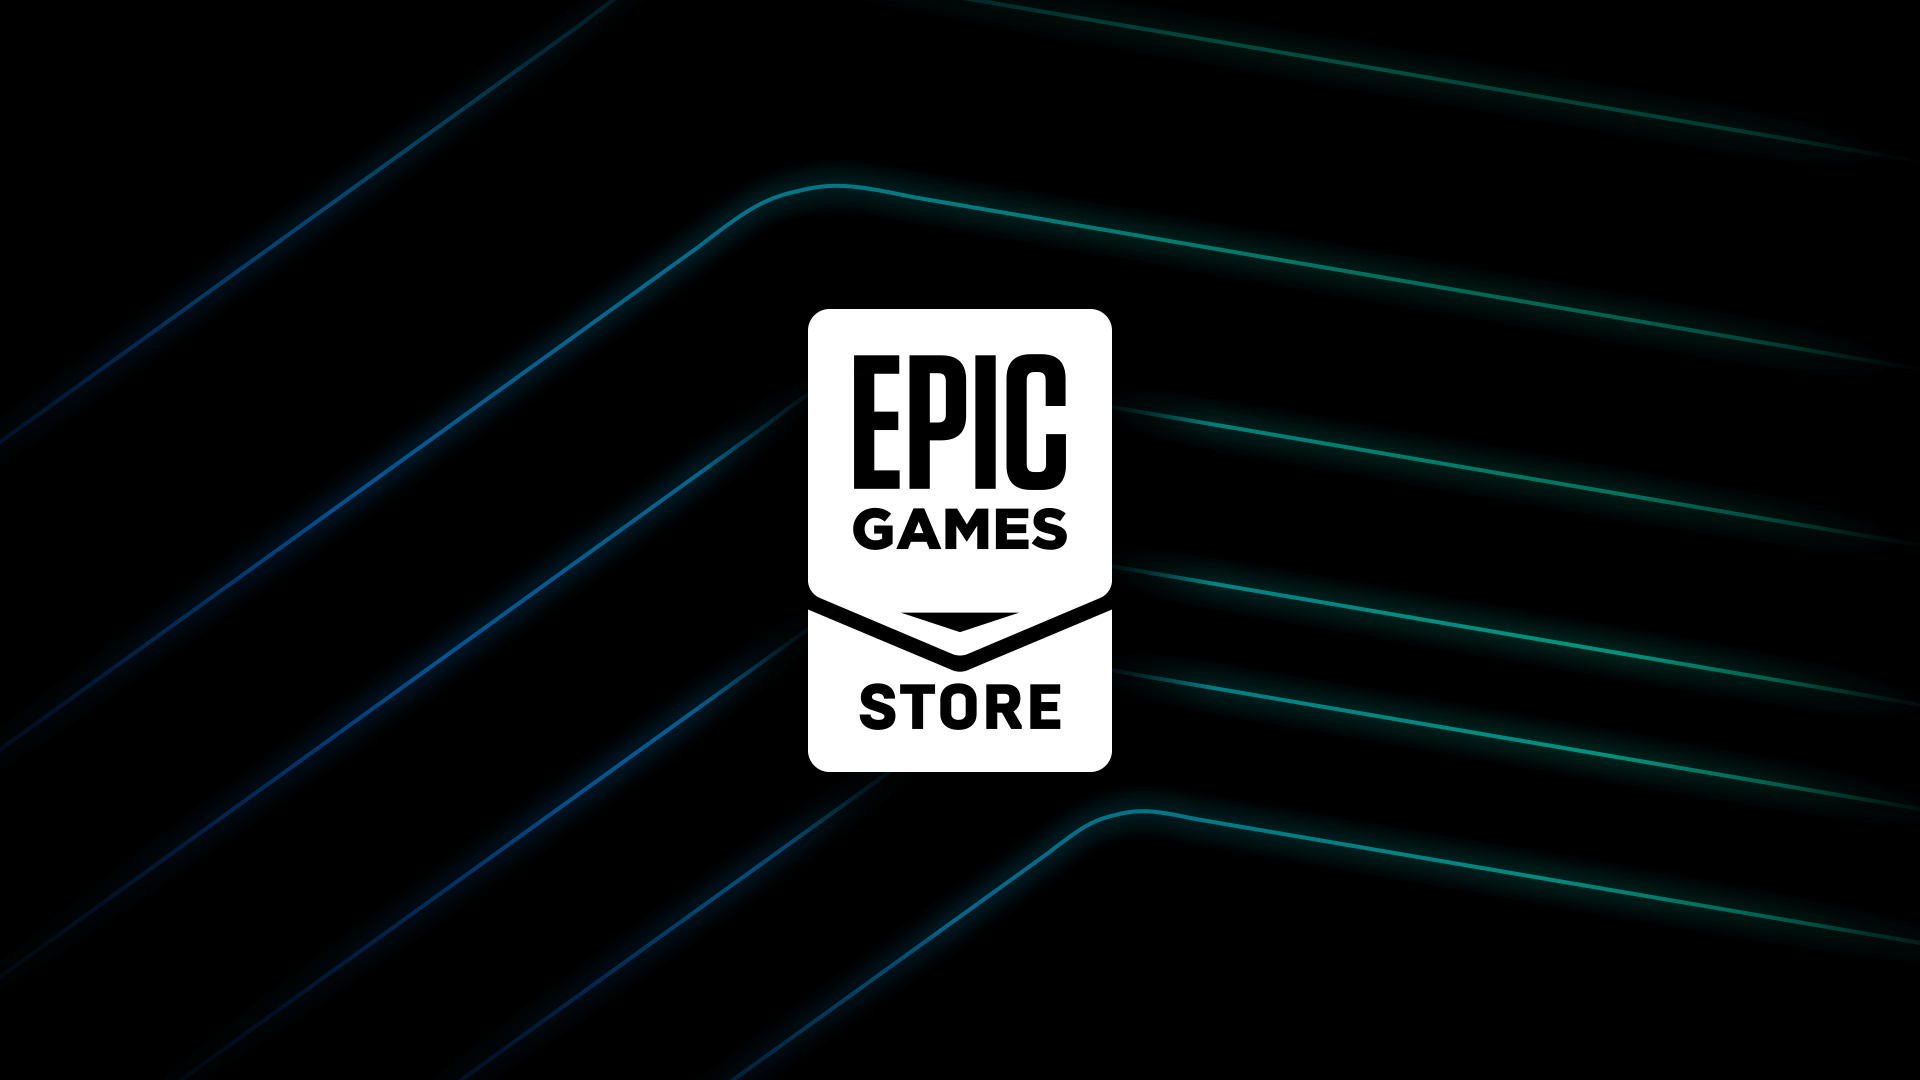 Cinq ans après son lancement, l'Epic Games Store n'est toujours pas rentable.